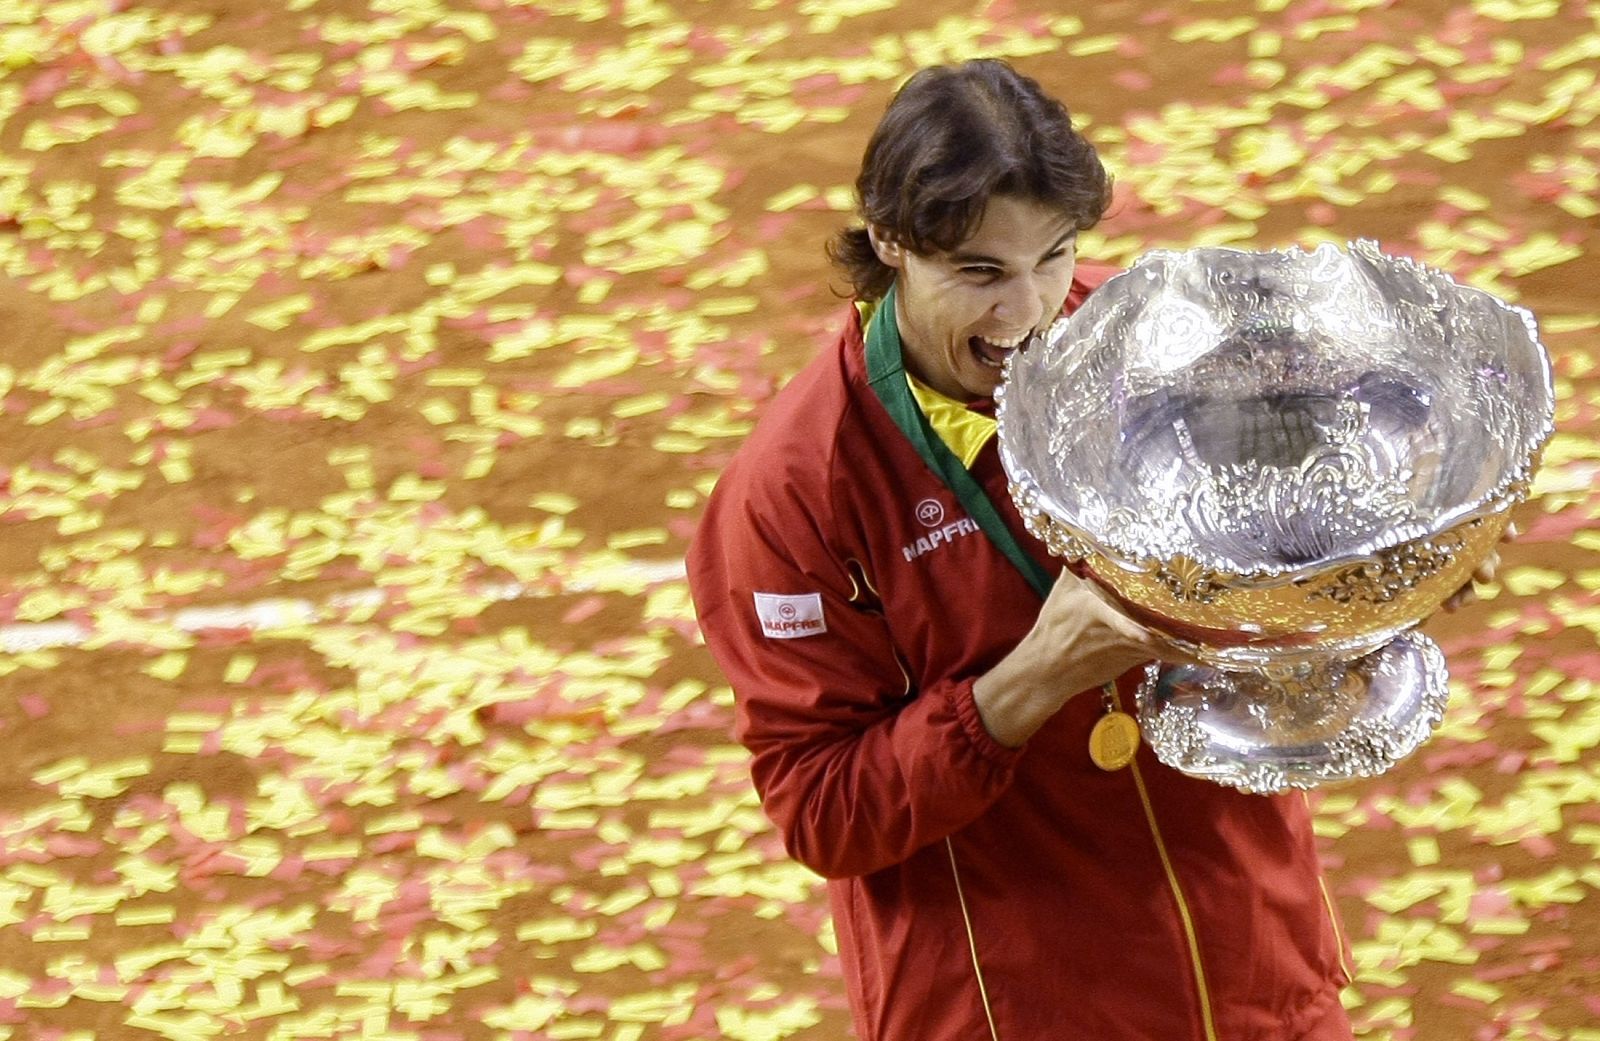 Rafa Nadal muerde la ensaladera 2009, gesto típico del mallorquín cada vez que gana un trofeo.